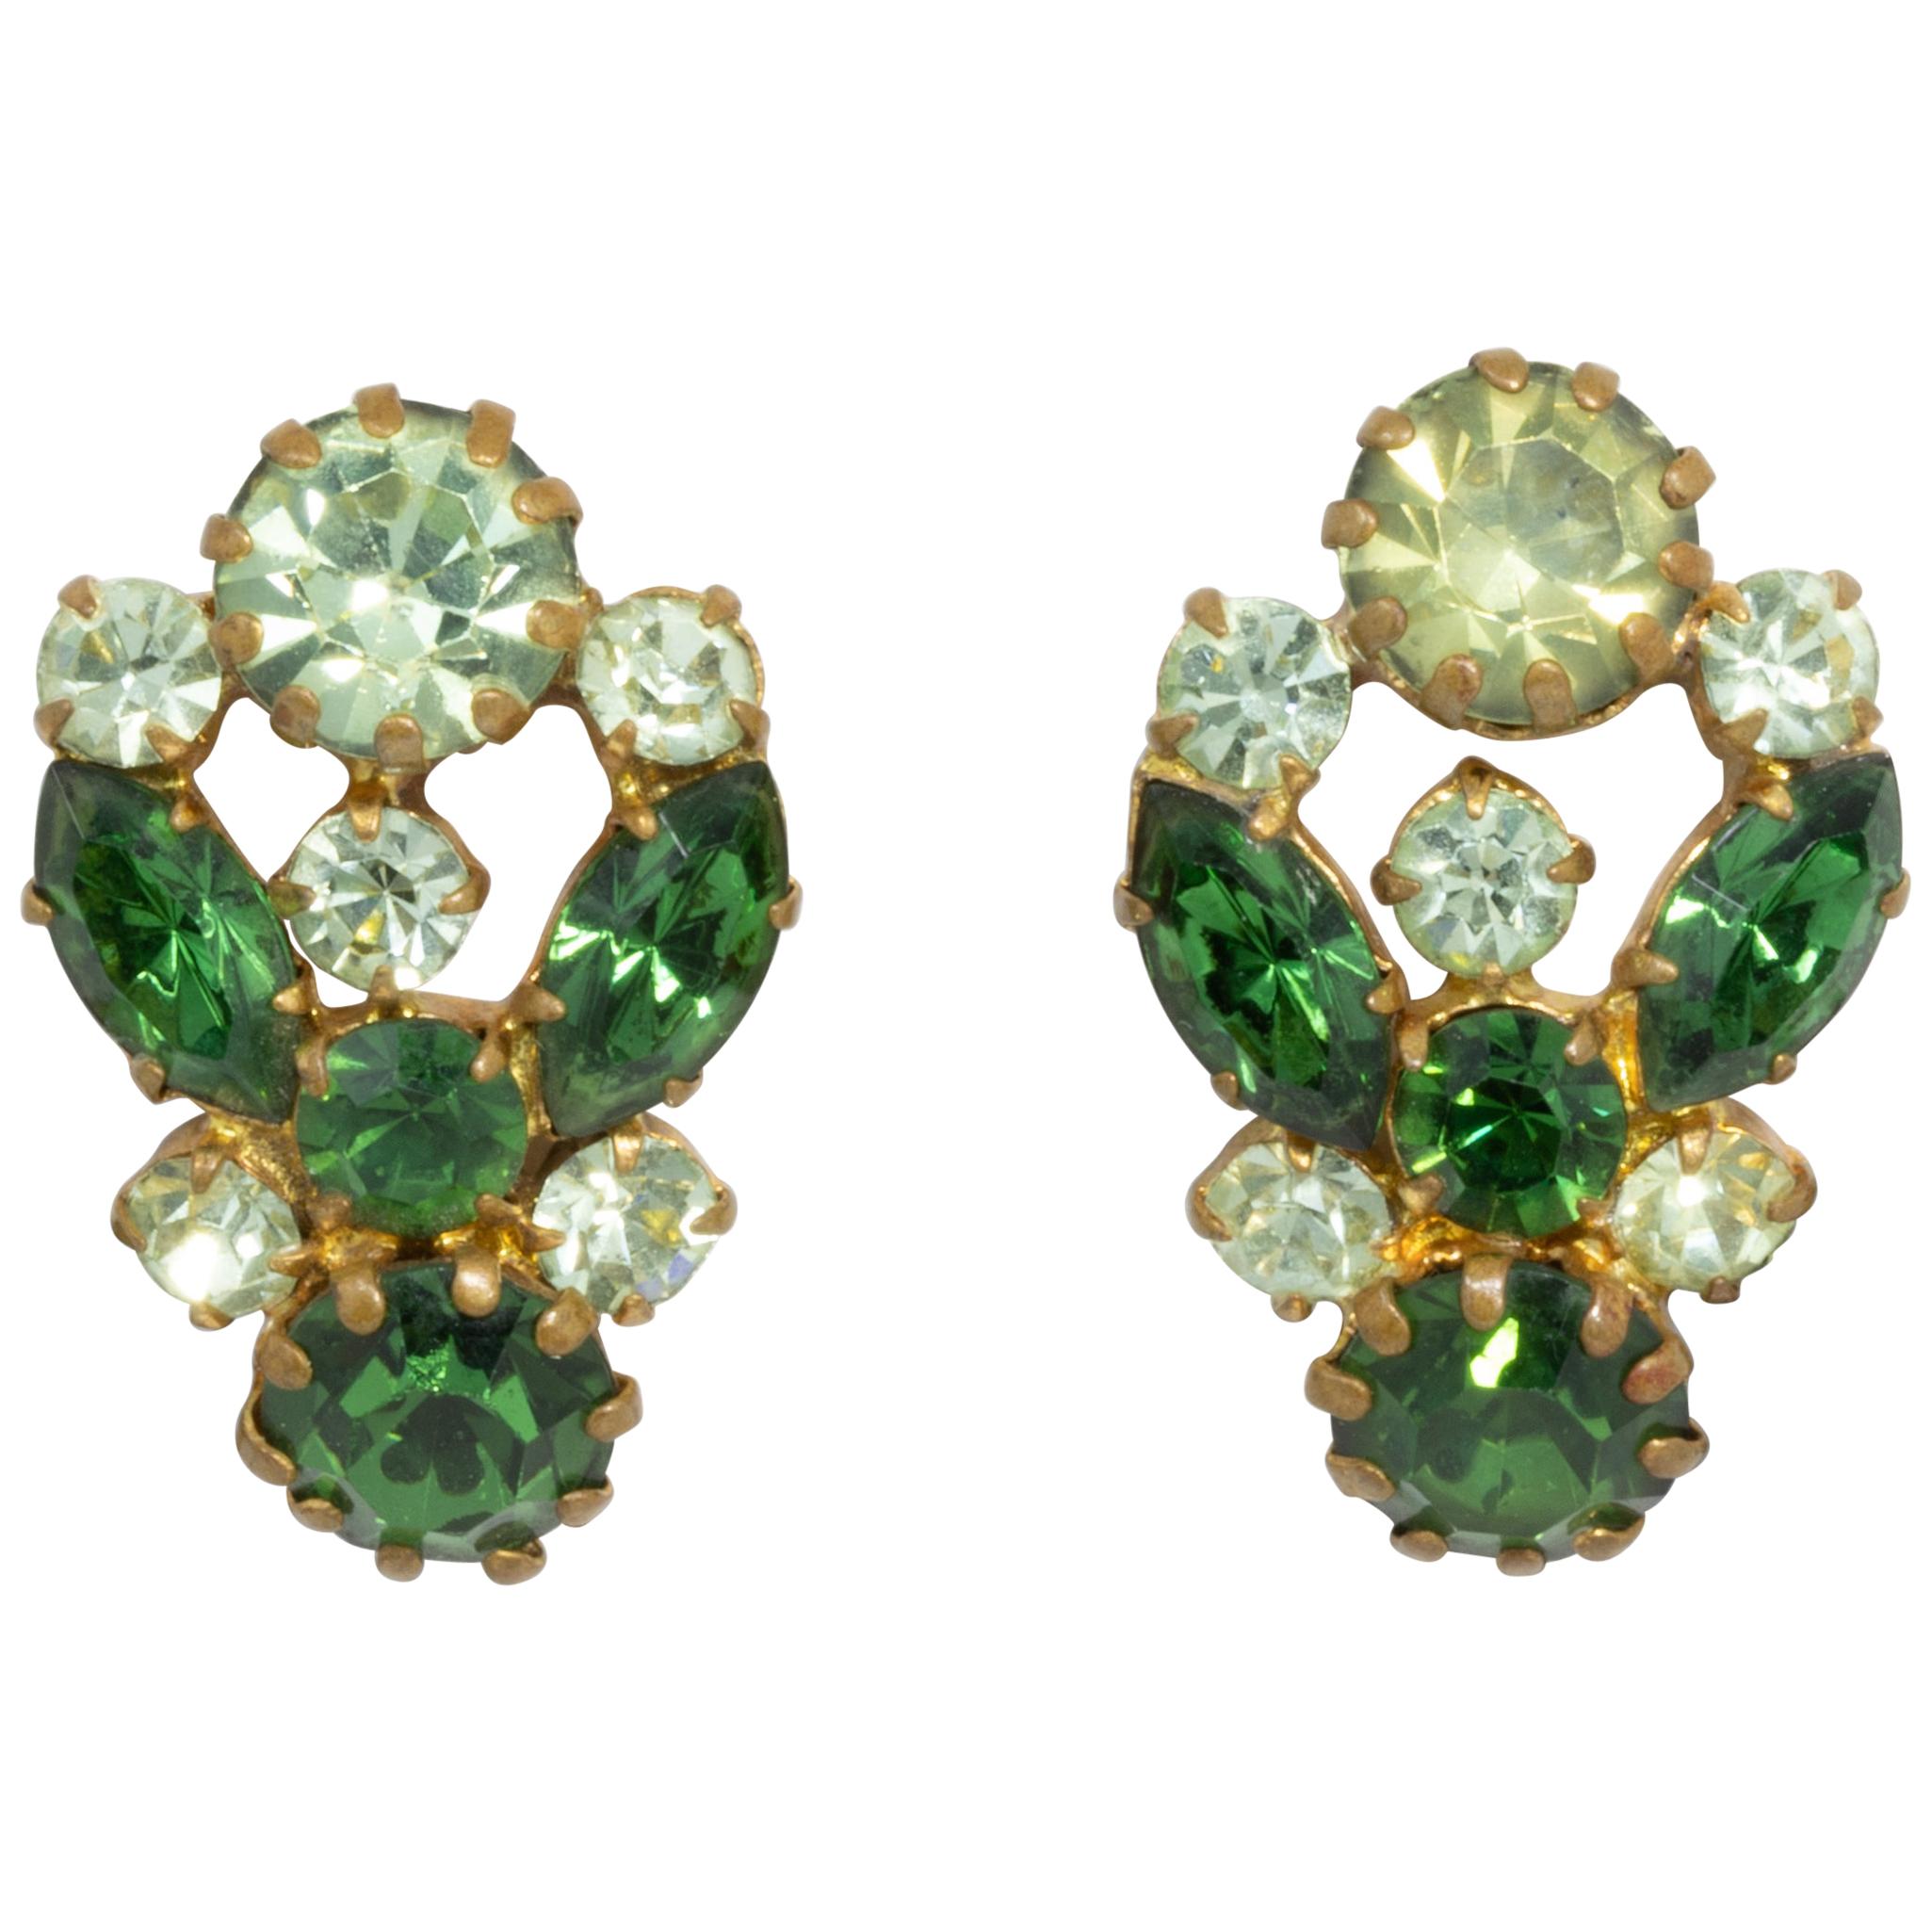 2 Black or Silver Ox Earring Dangle Vintage Austrian Emerald Green Octagon & Blue Zircon  17x7mm Drops  Rhinestone Drops Brass Brass Ox